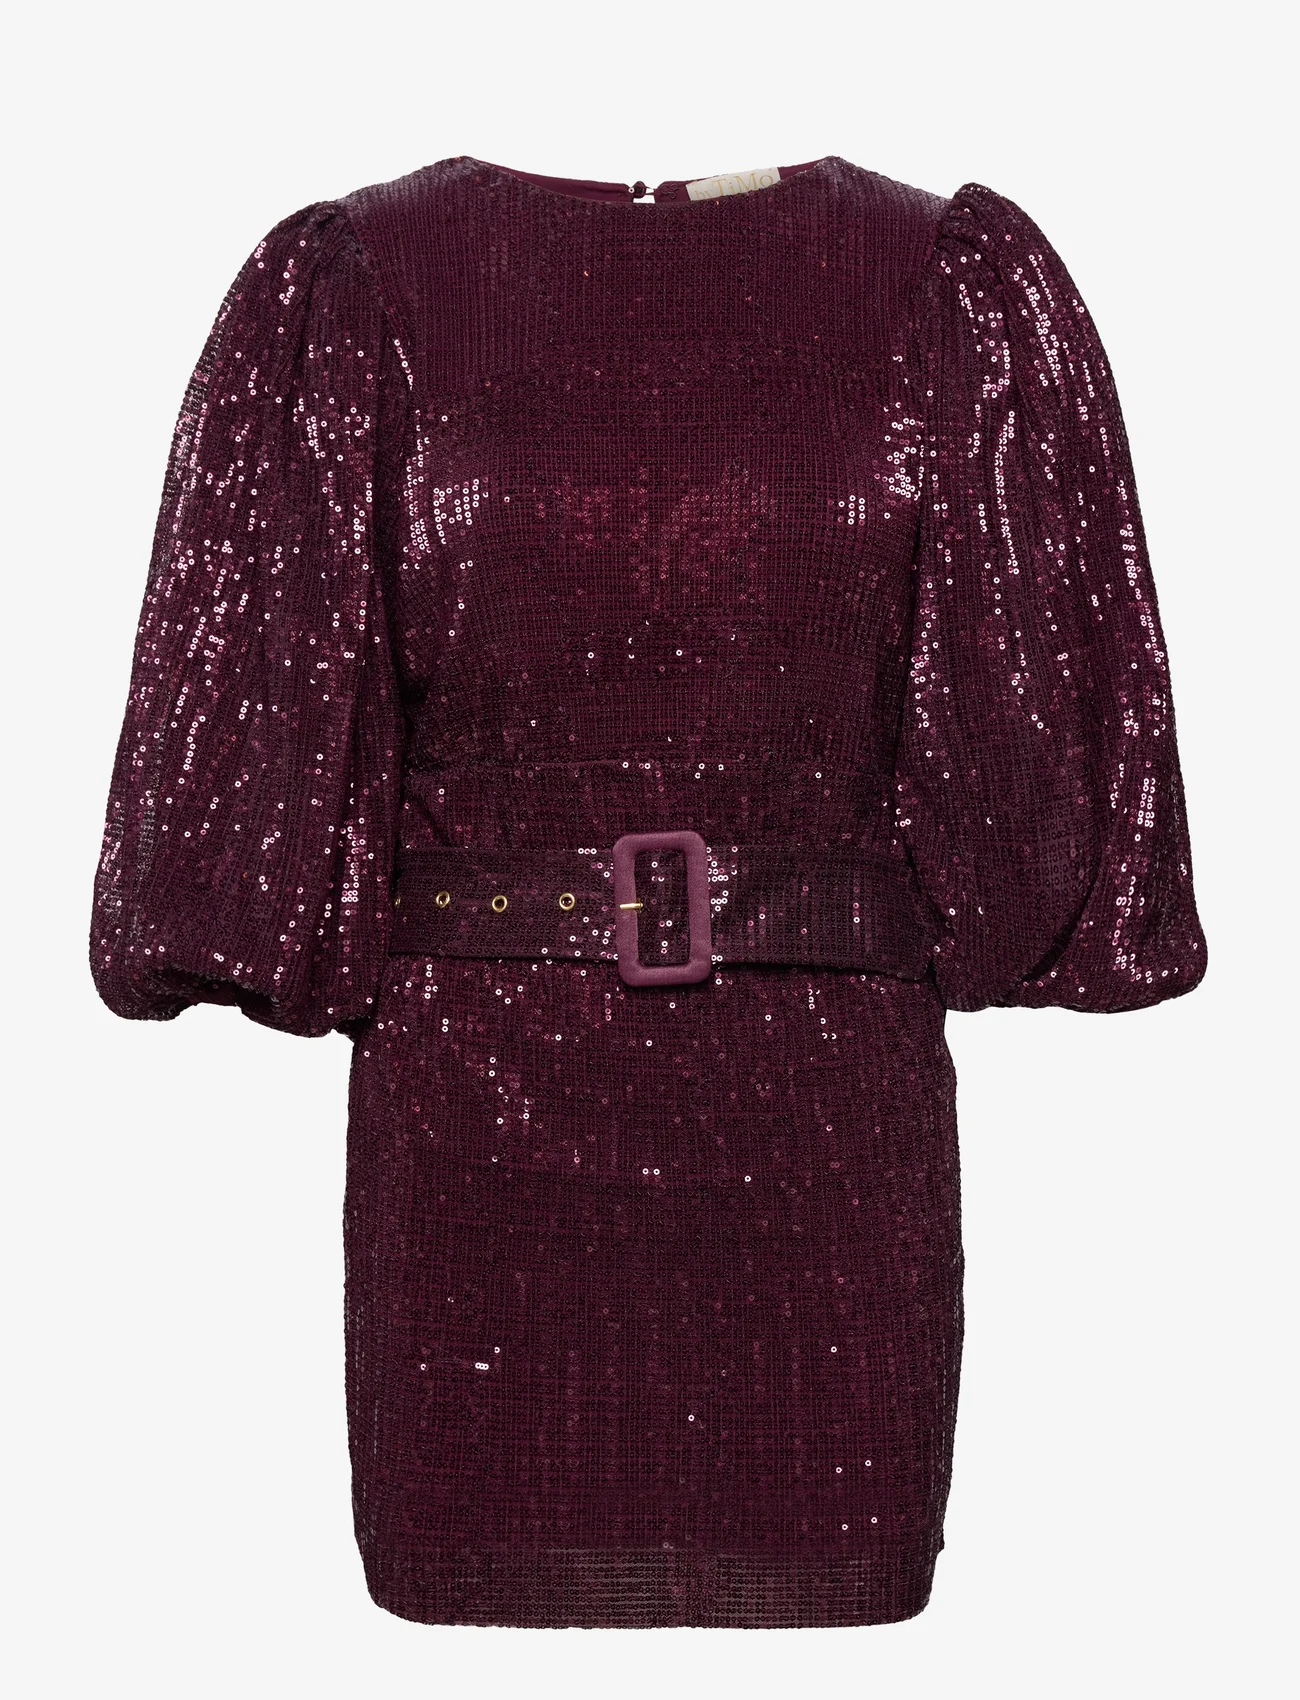 by Ti Mo - Sequins Puff Sleeve Mini Dress - odzież imprezowa w cenach outletowych - 048plum - 0